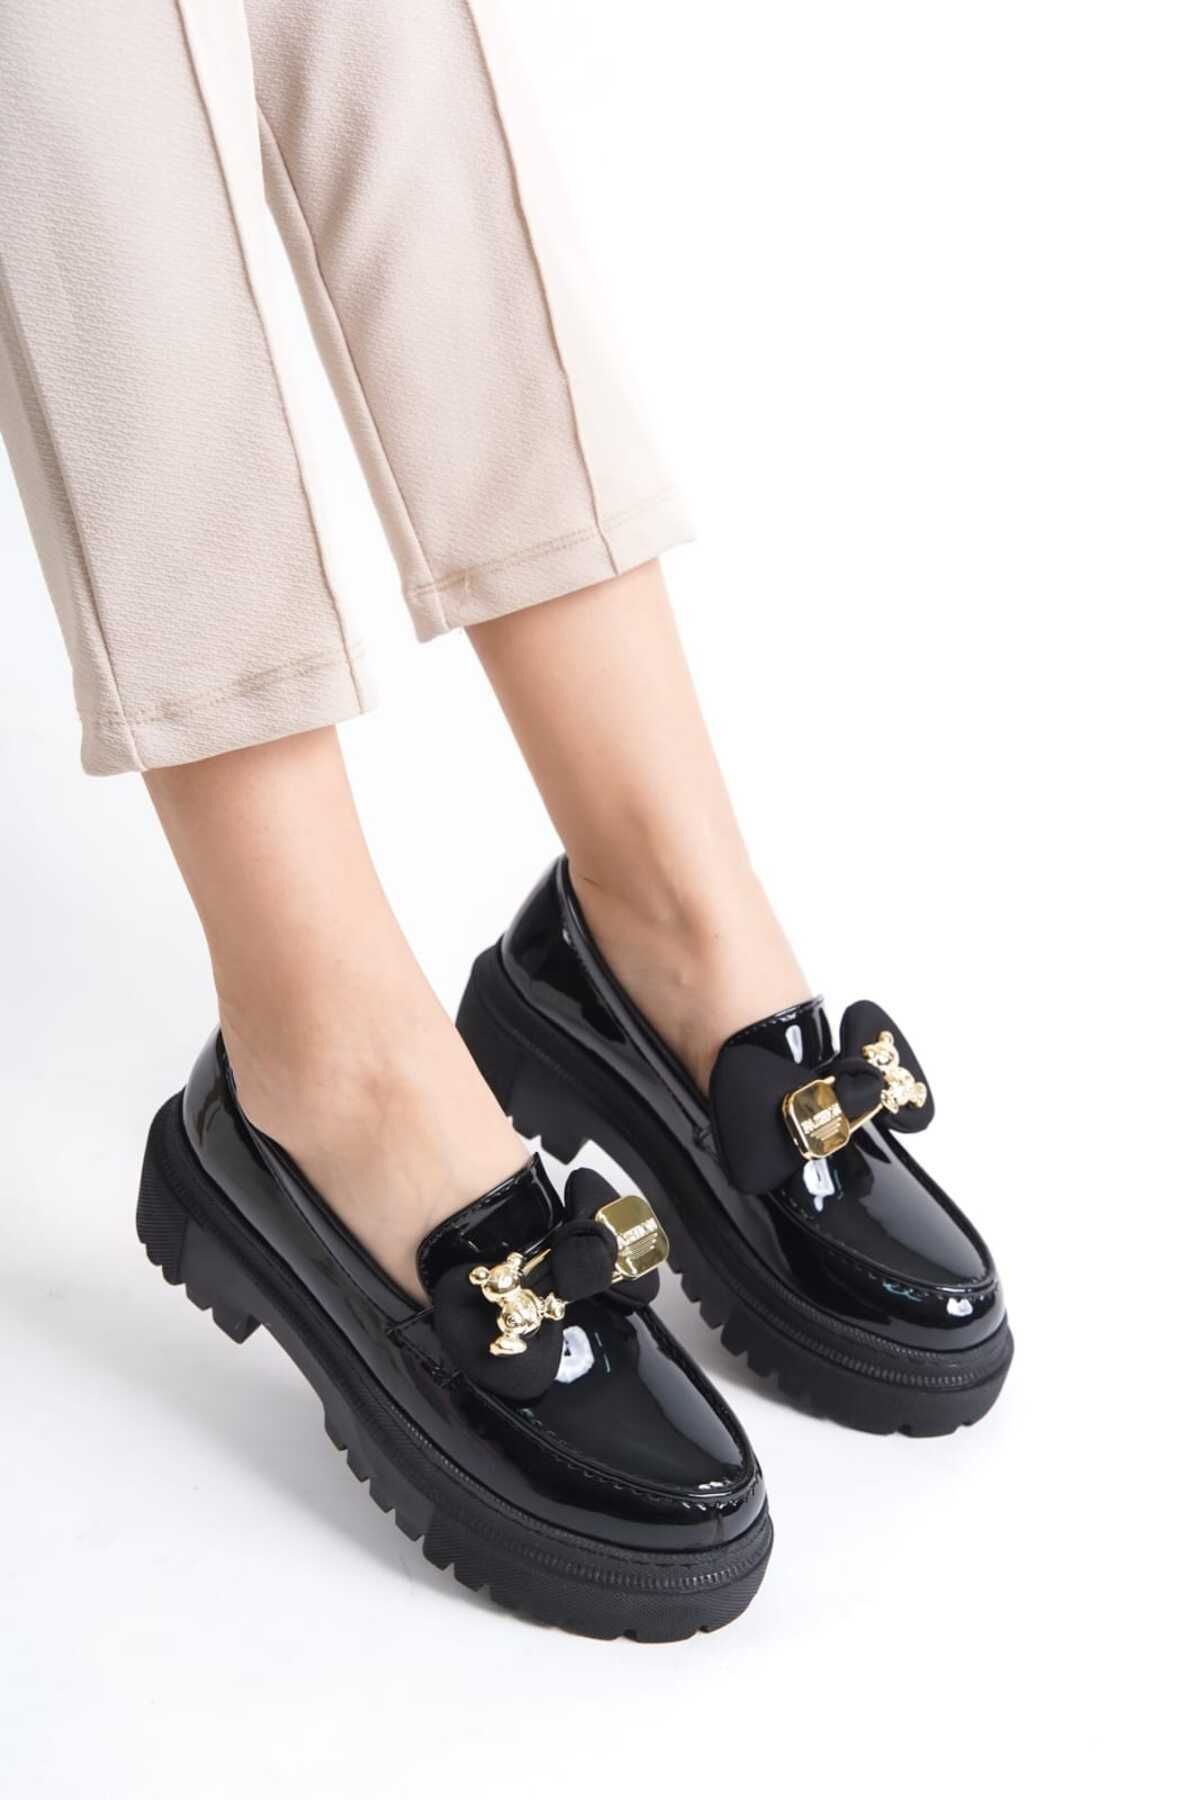 Bilalim Shoes Ayıcık Tokalı Kadin Günlük Loafer Ayakkabı Şik Ve Rahat